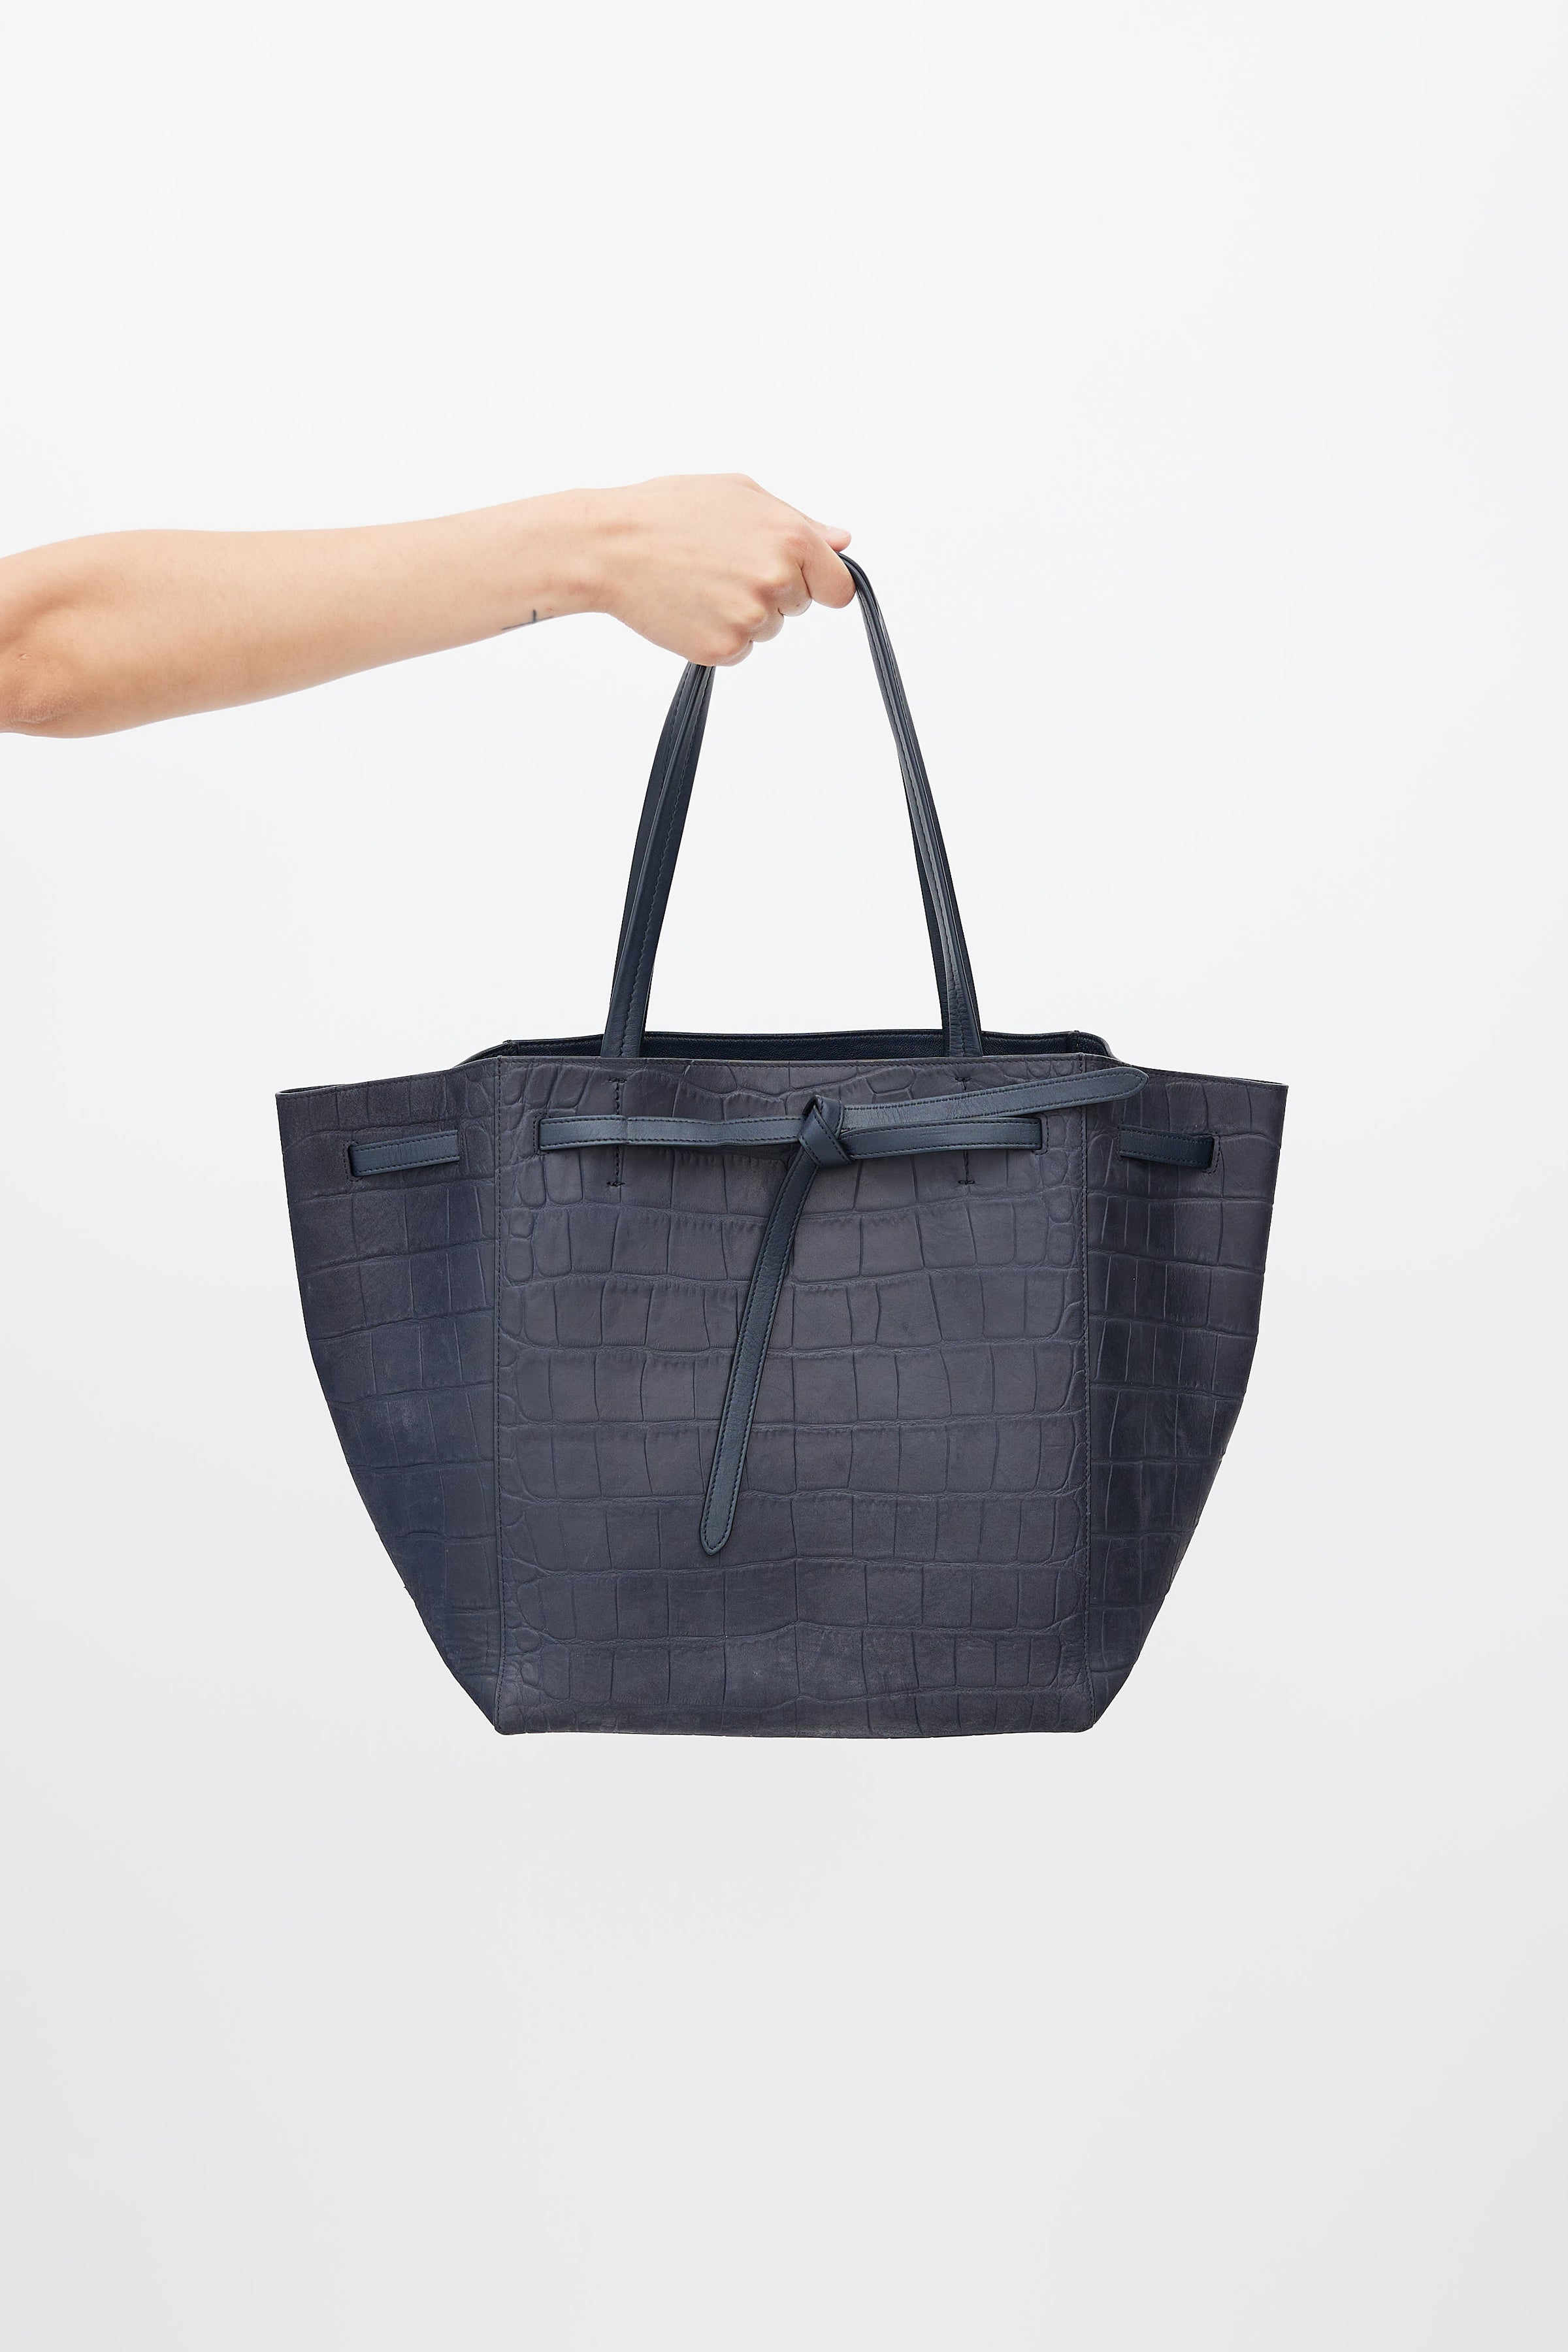 Cabas vertical leather handbag Celine Blue in Leather - 32082043